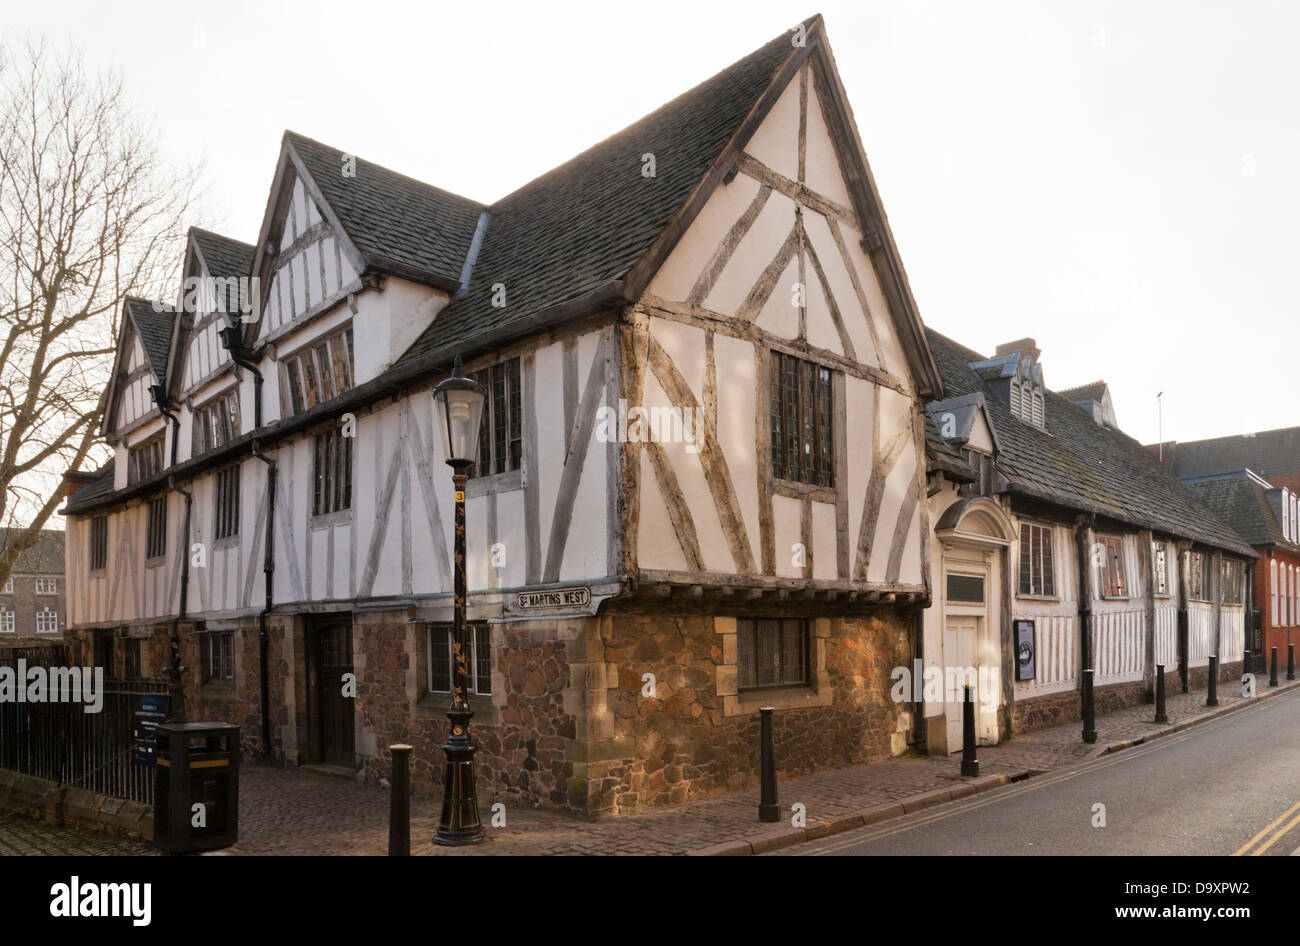 El grado que enumeré Leicester Guildhall, un edificio de entramado de madera del siglo 14. Leicester, Inglaterra, Reino Unido. Foto de stock